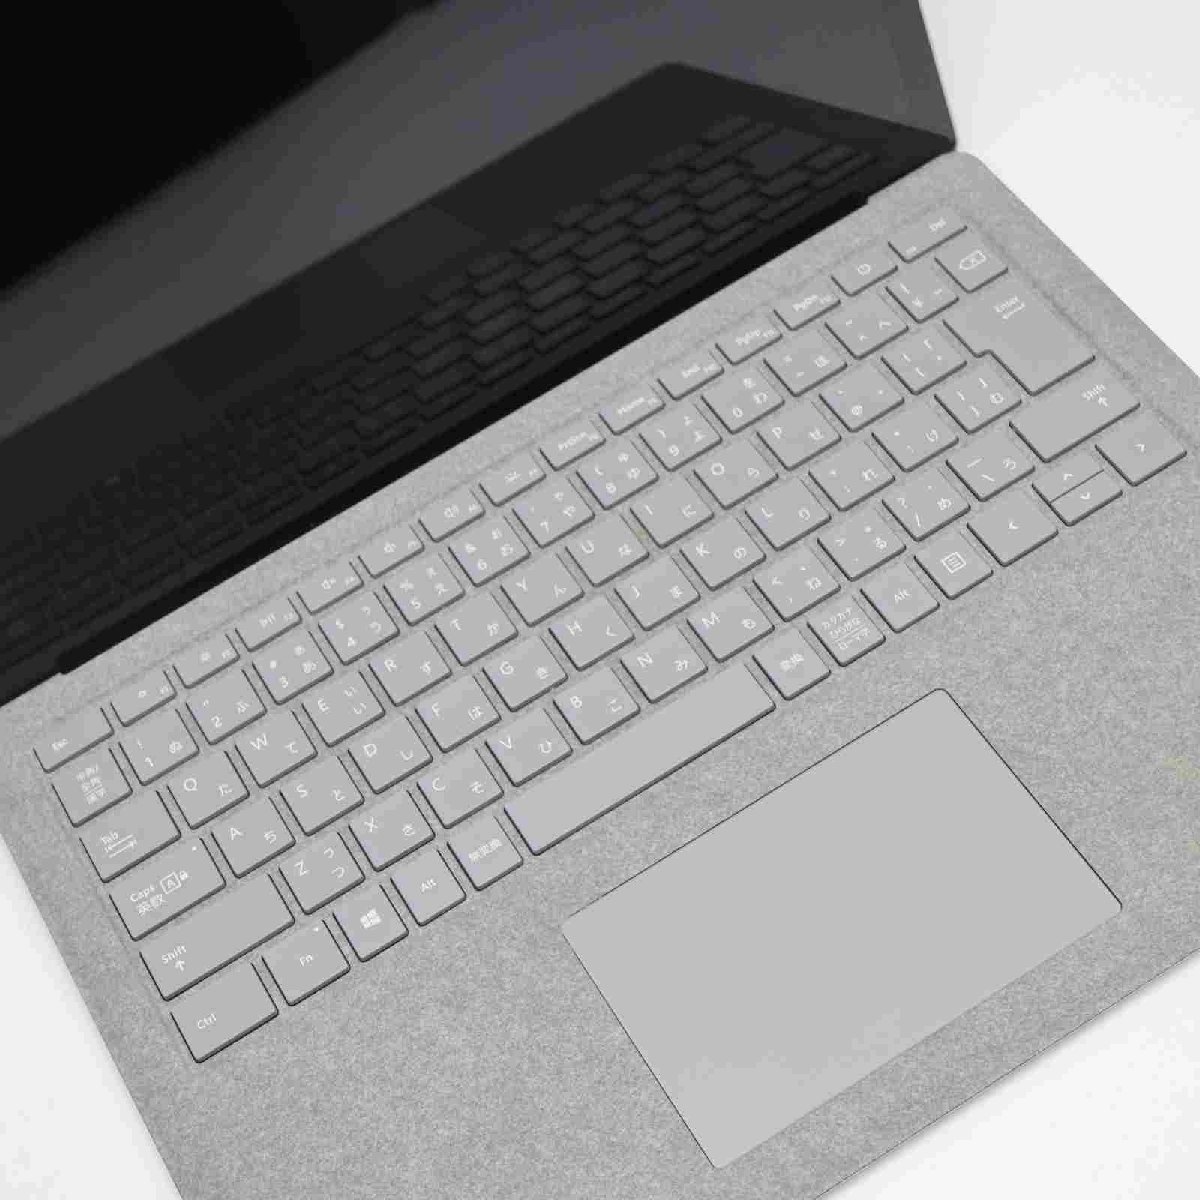 美品 Surface Laptop 1 第7世代 Core i5 8GB SSD 256GB サーフェス Microsoft 中古 即日発送 あすつく 土日祝発送OK_画像2